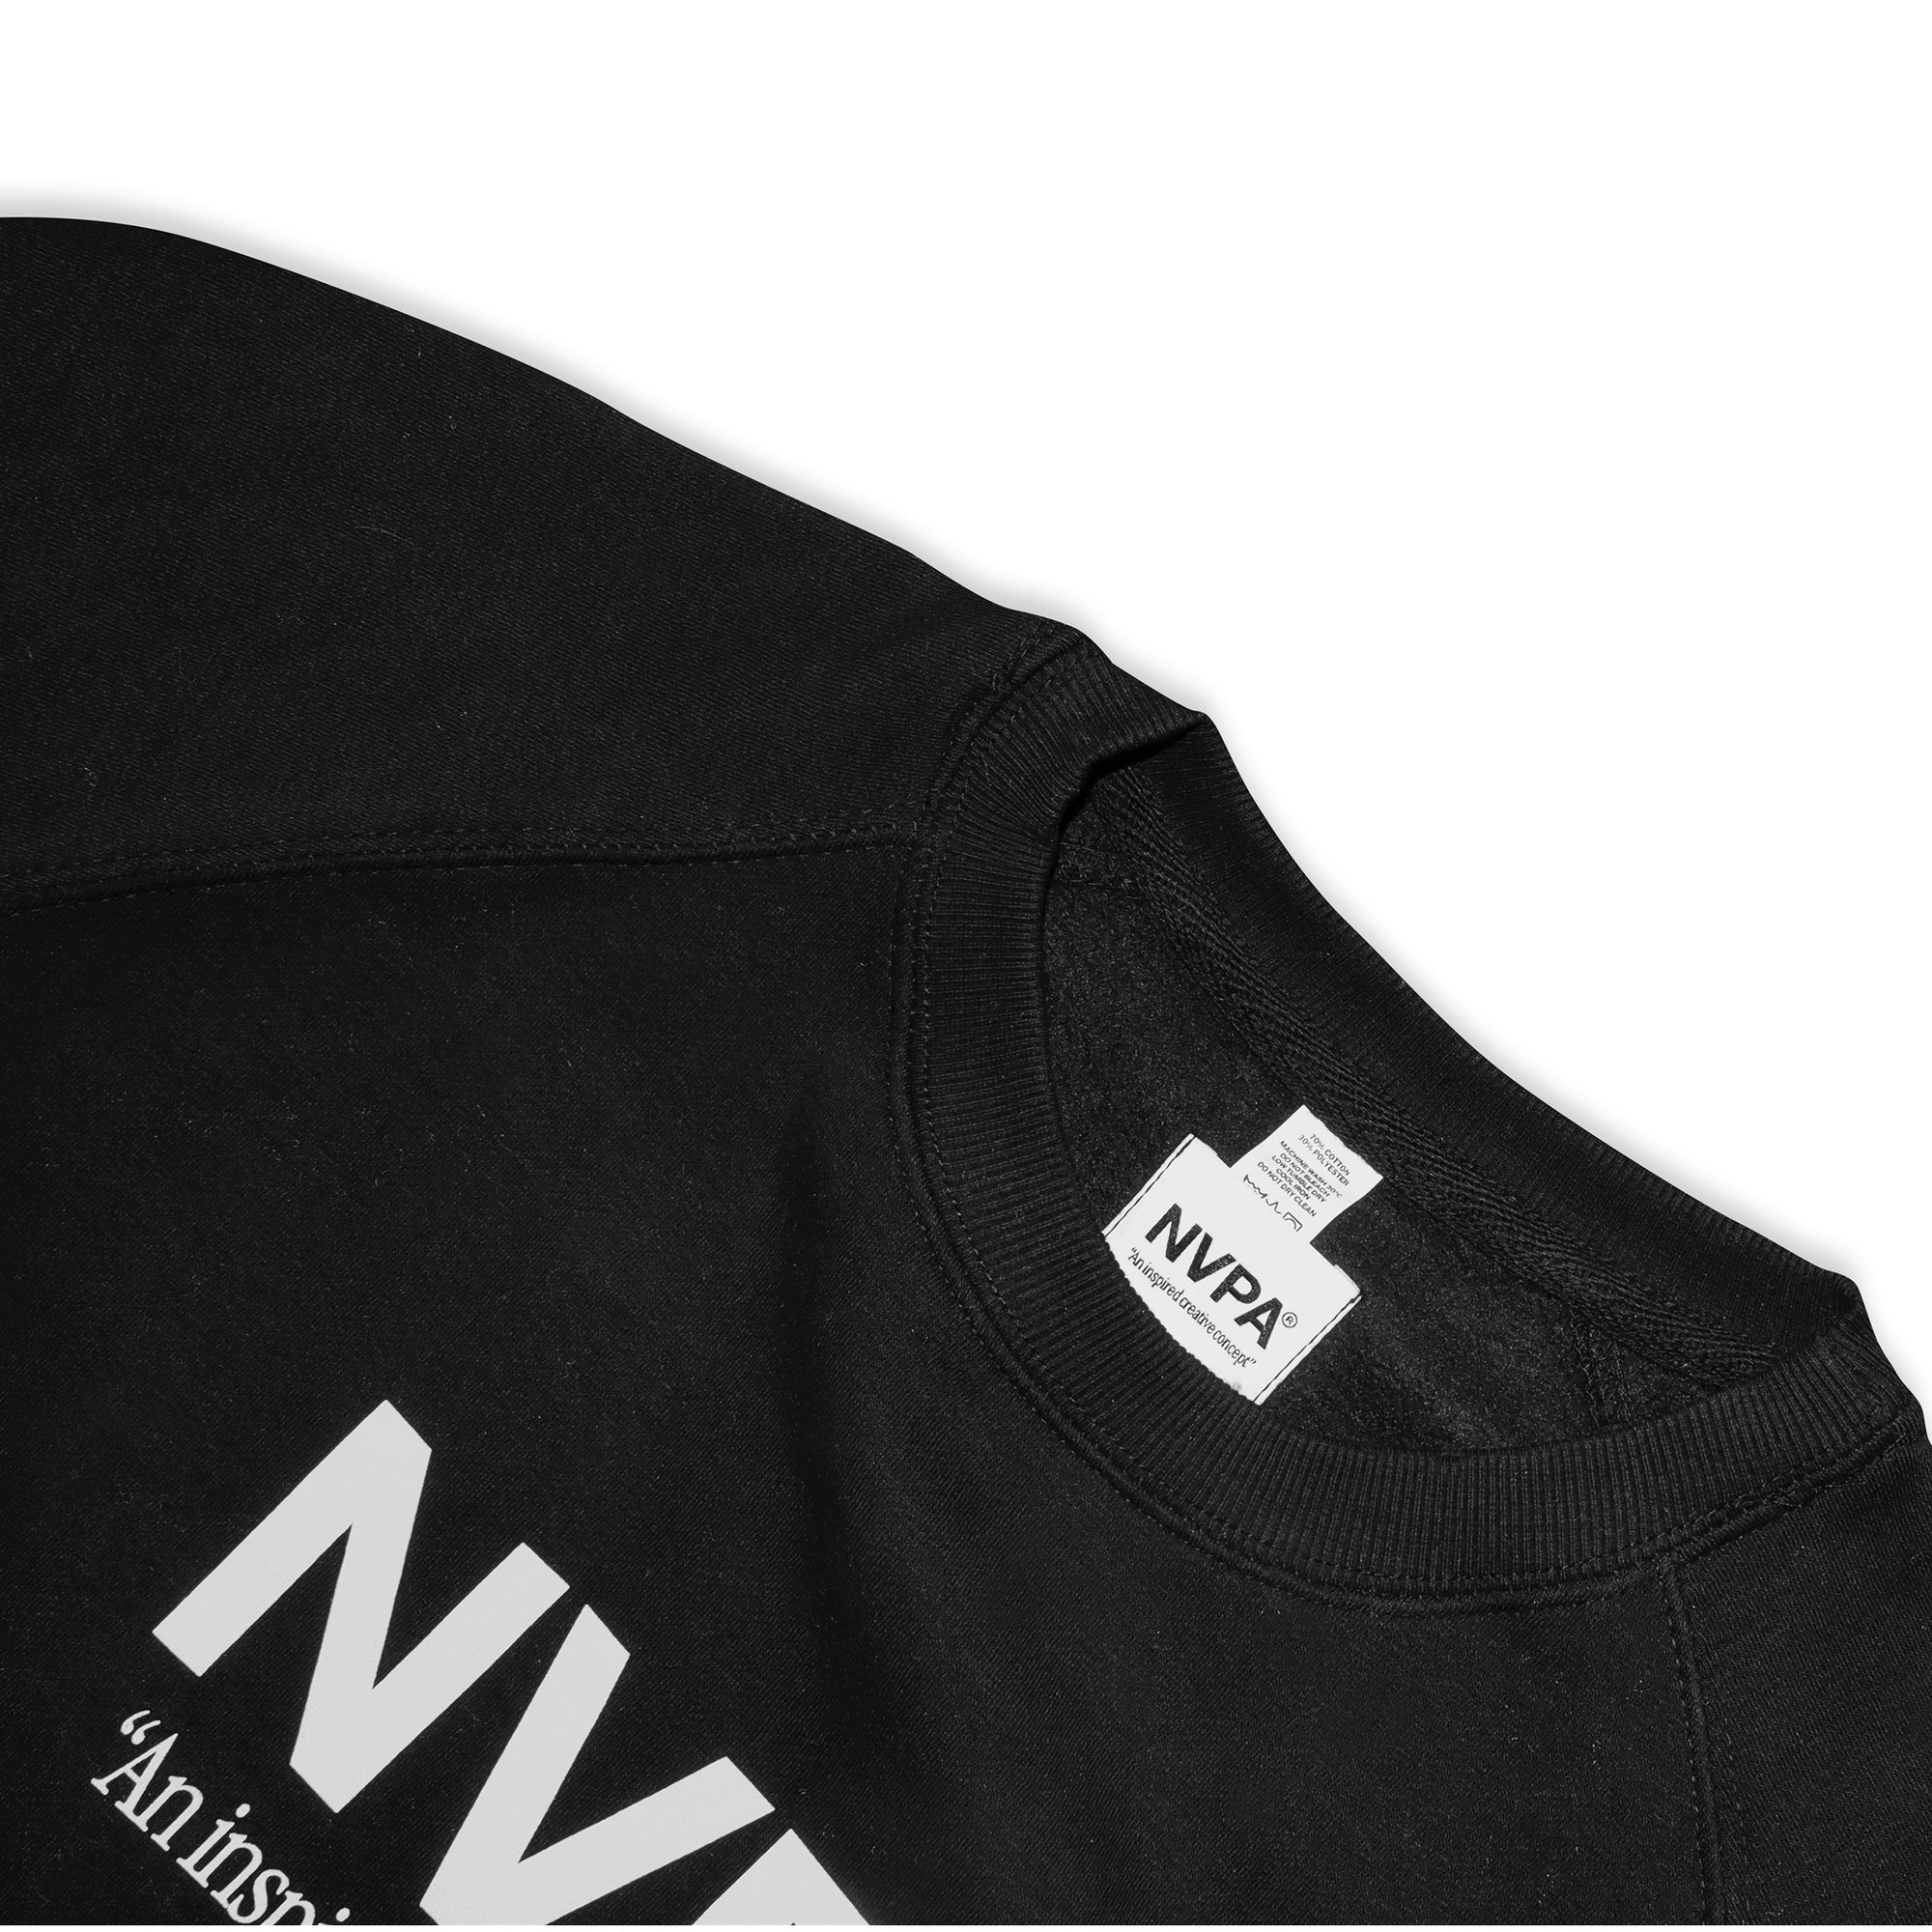 NVPA® black sweatshirt collar detail